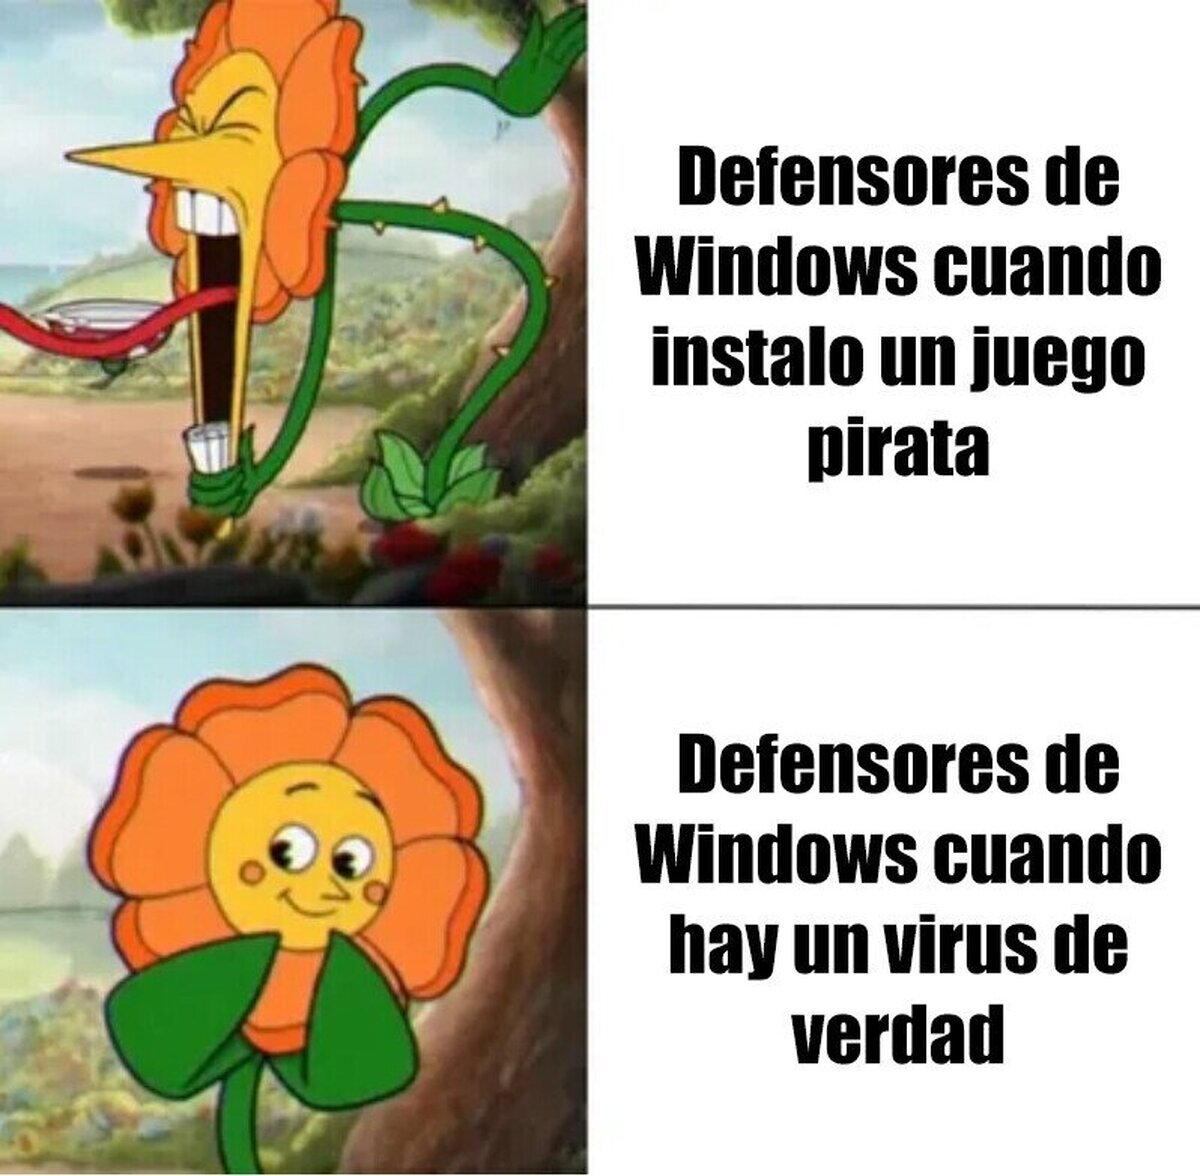 Los defensores de Windows